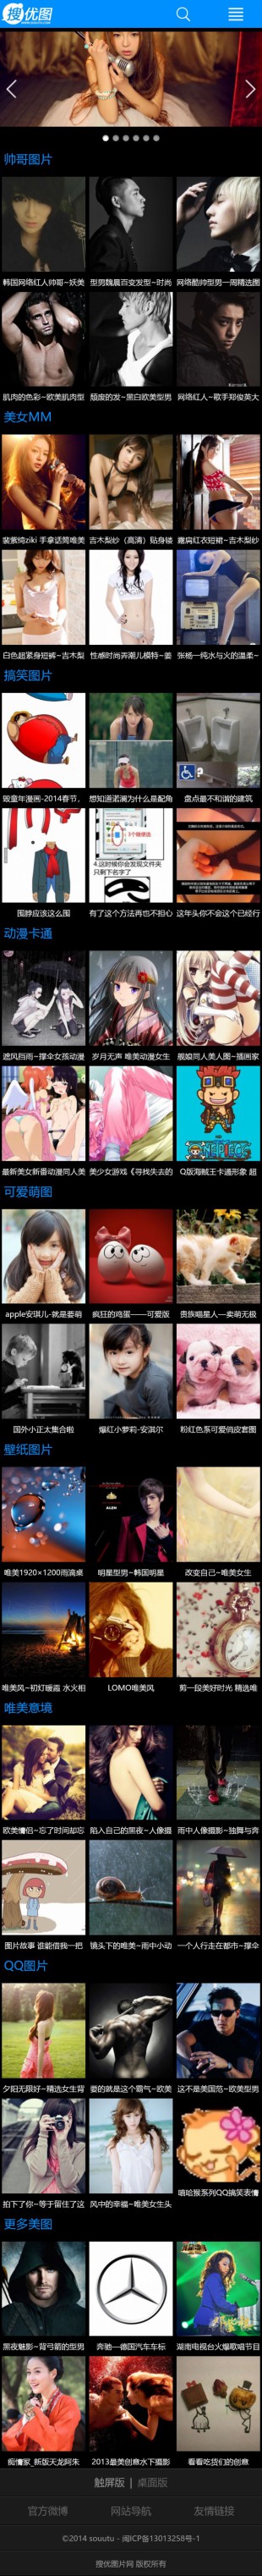 搜图片网手机图片中文网站模板制作手机图片